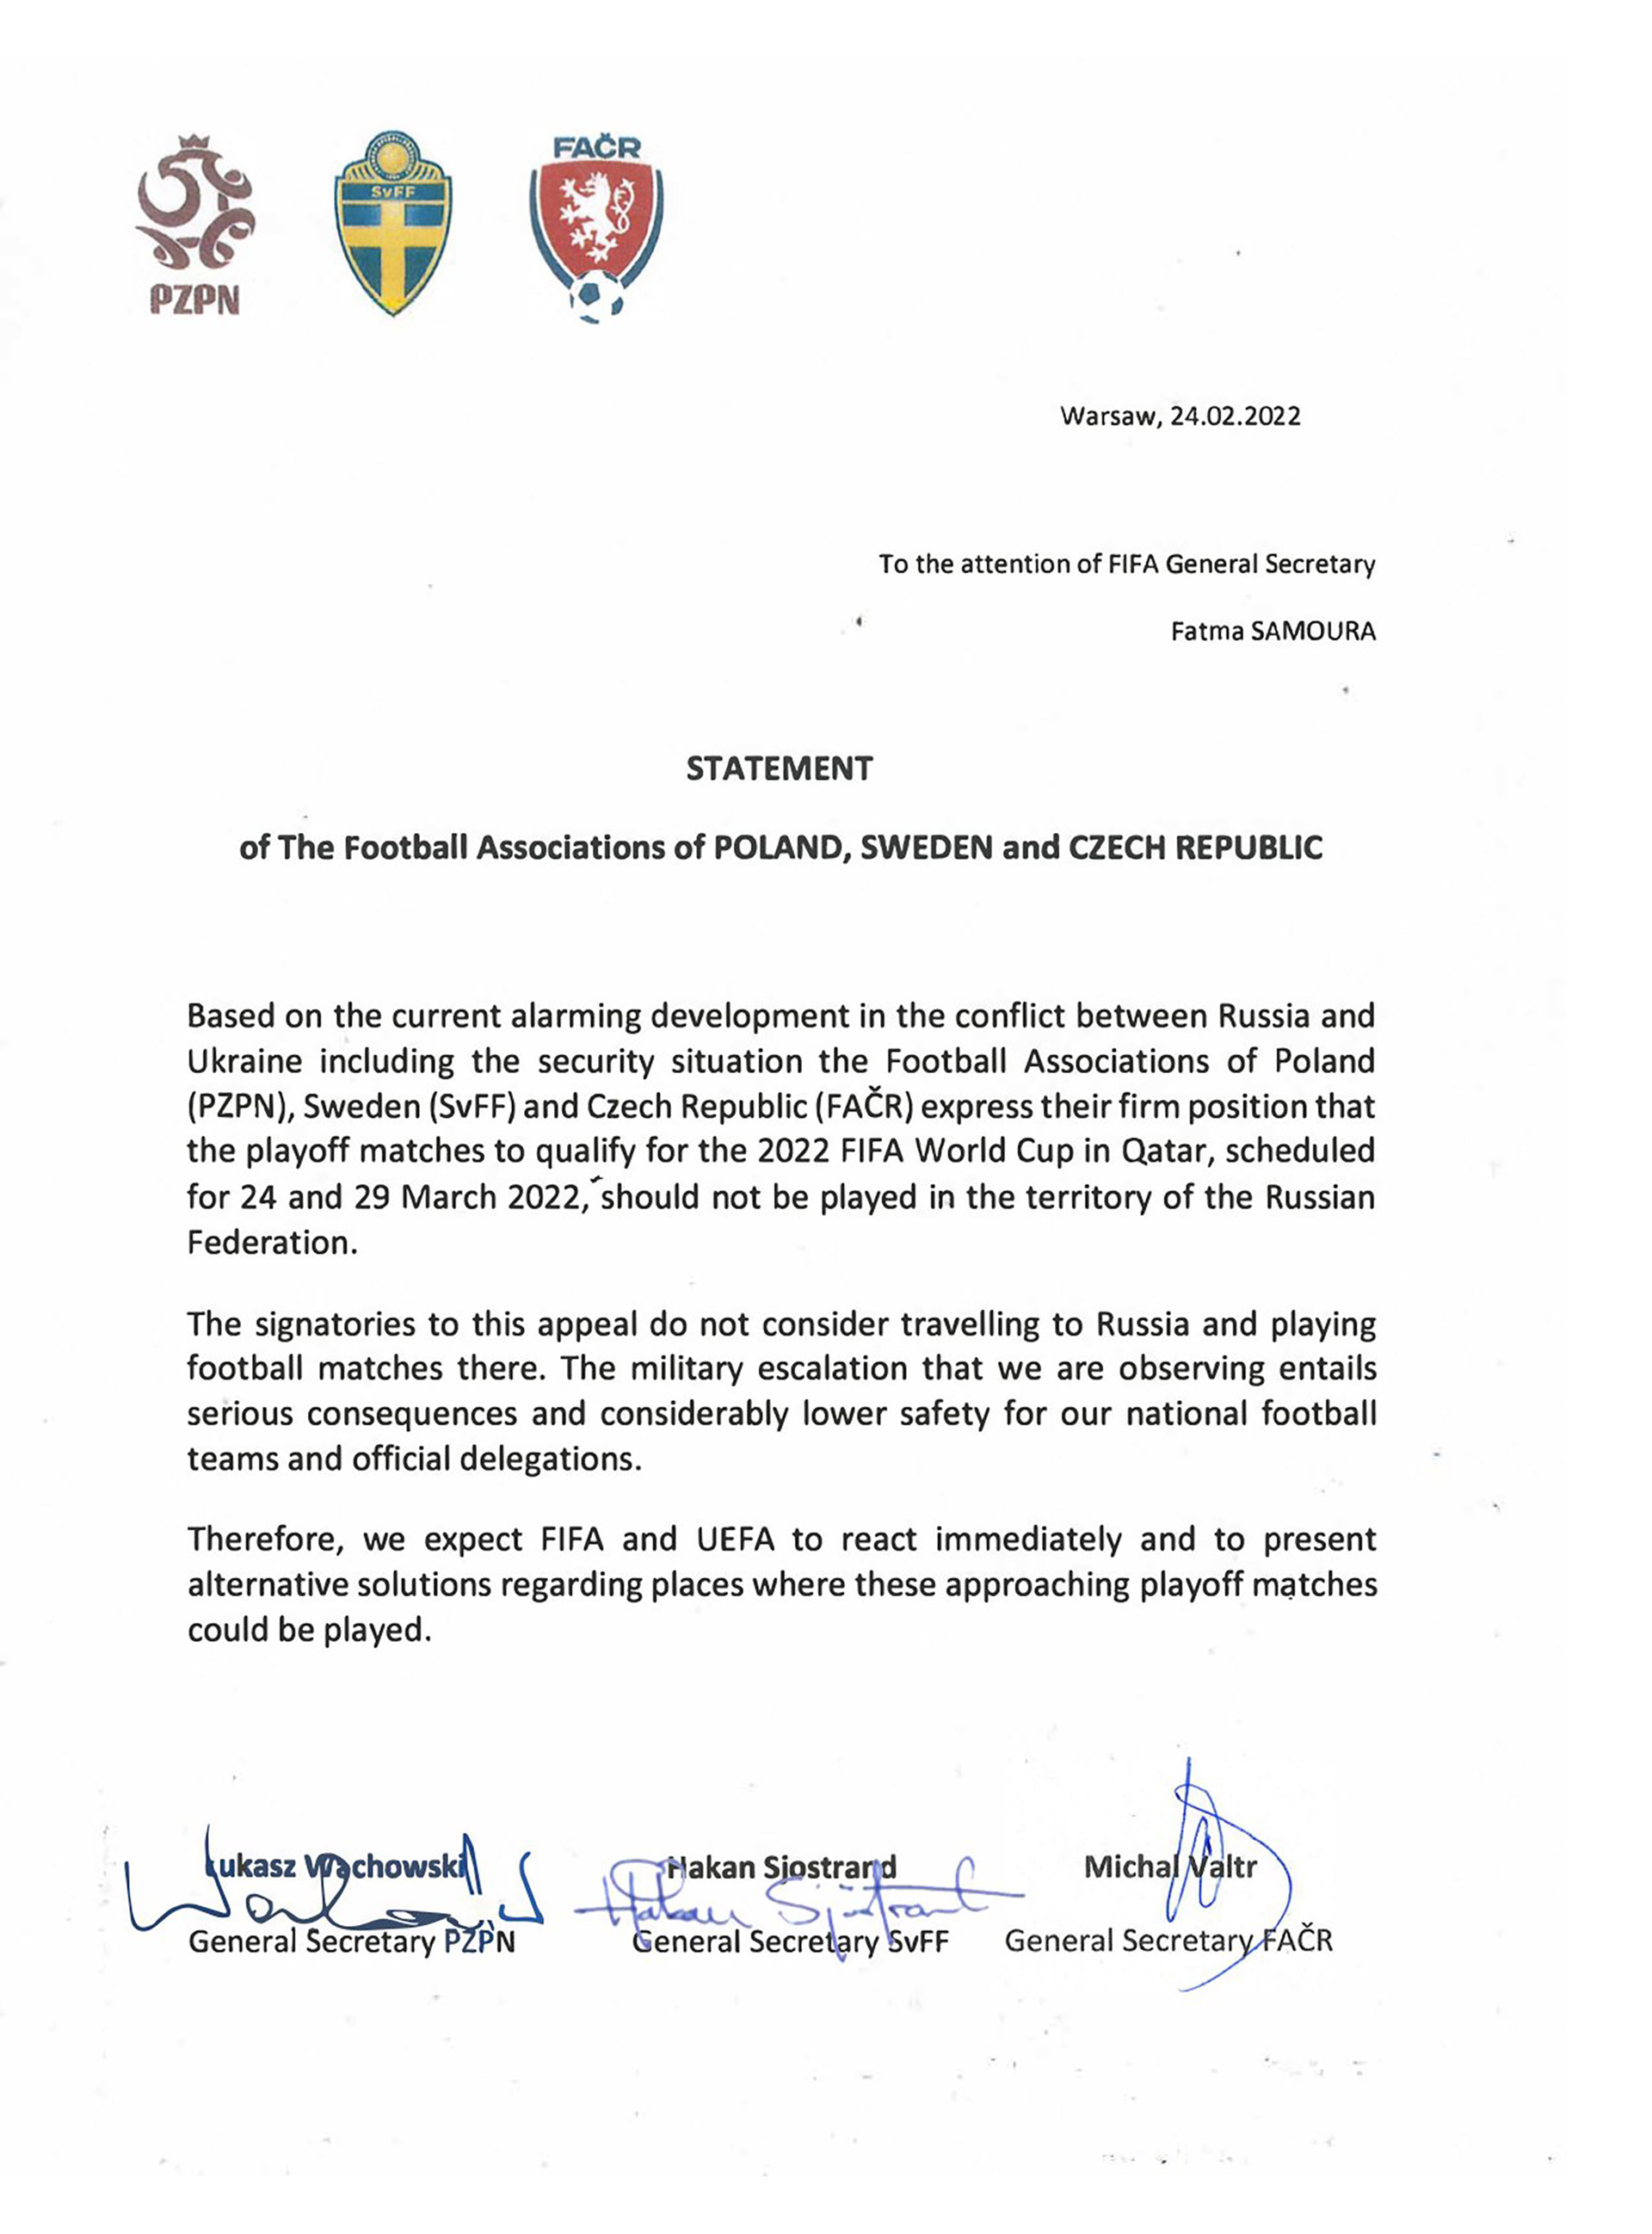 Comunicado de las federaciones de fútbol de Polonia, Suecia y República Checa por el avance de las tropas rusas